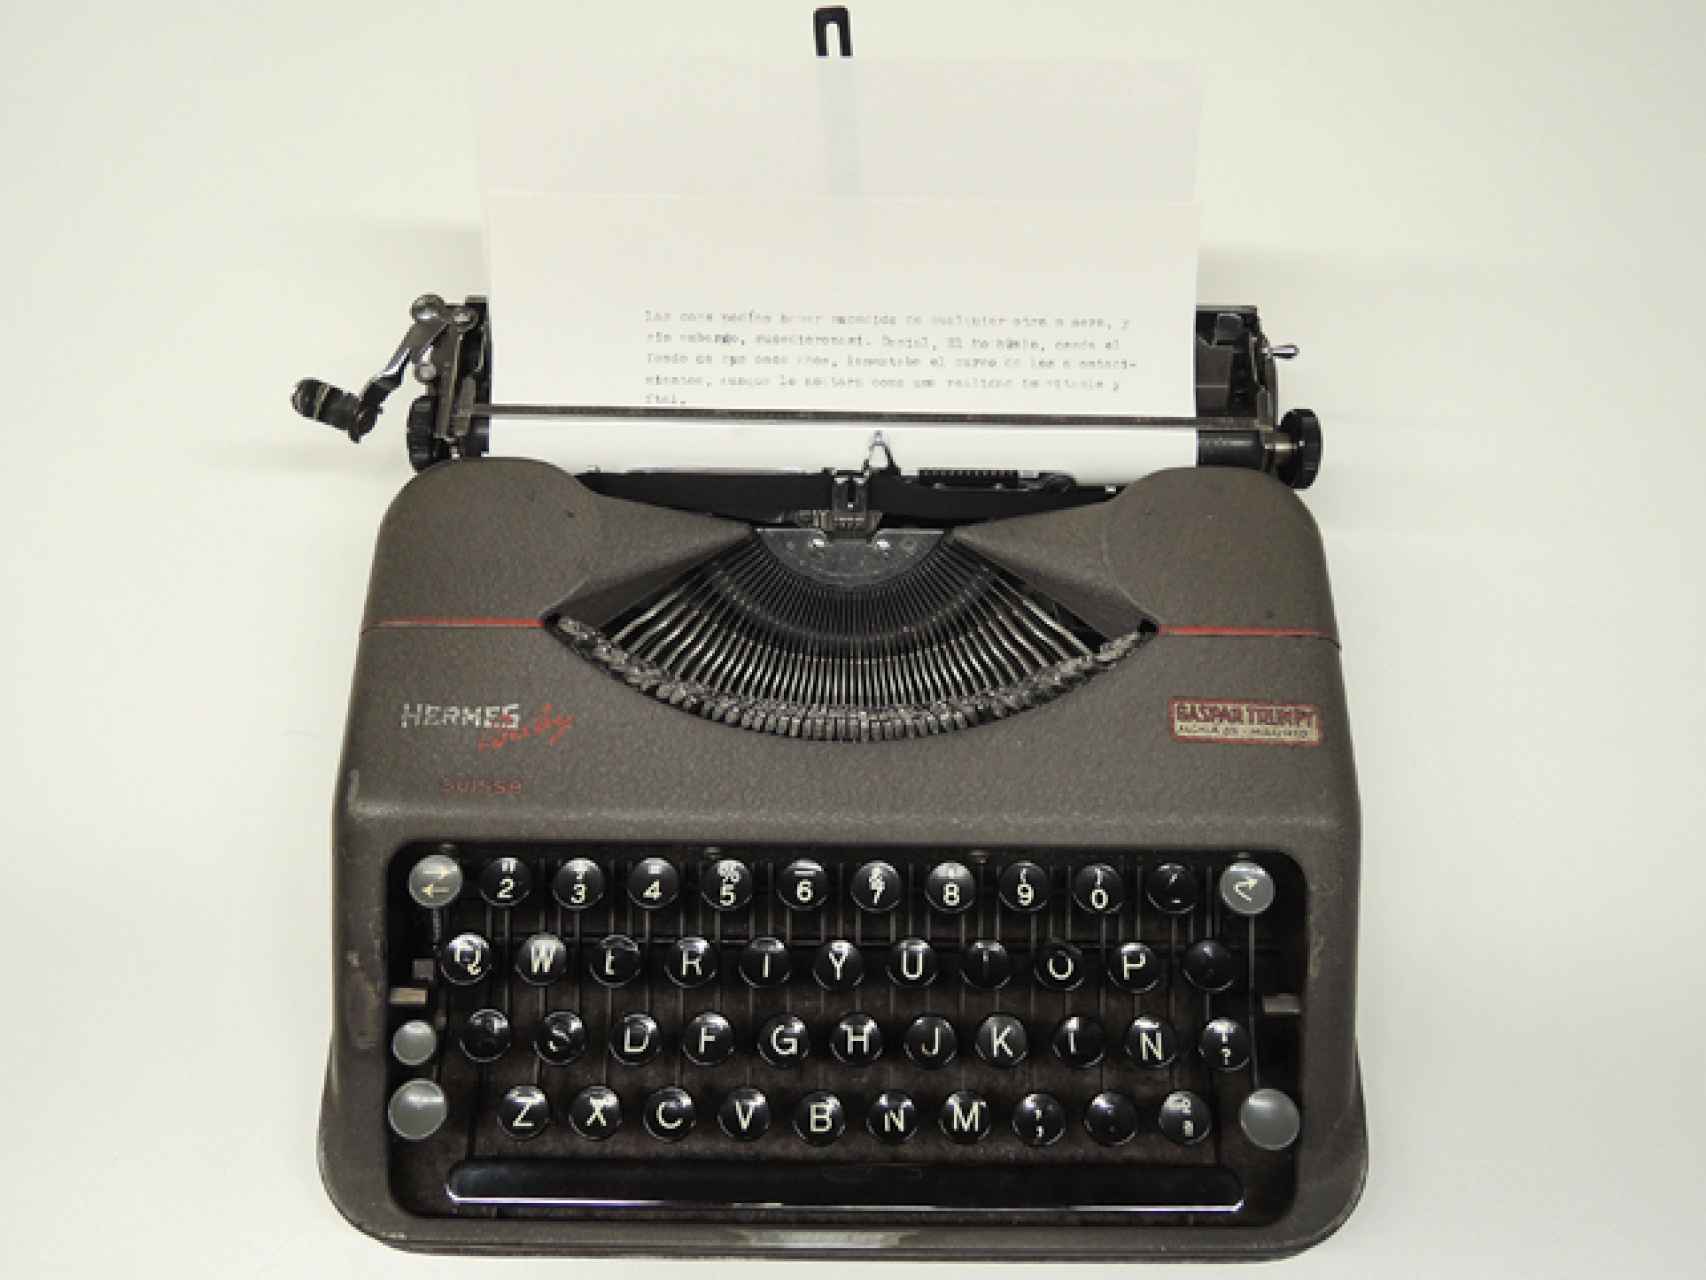 Máquina de escribir Hermes Baby que Ángeles de Castro le regaló a Miguel Delibes. Foto: Fundación Miguel Delibes